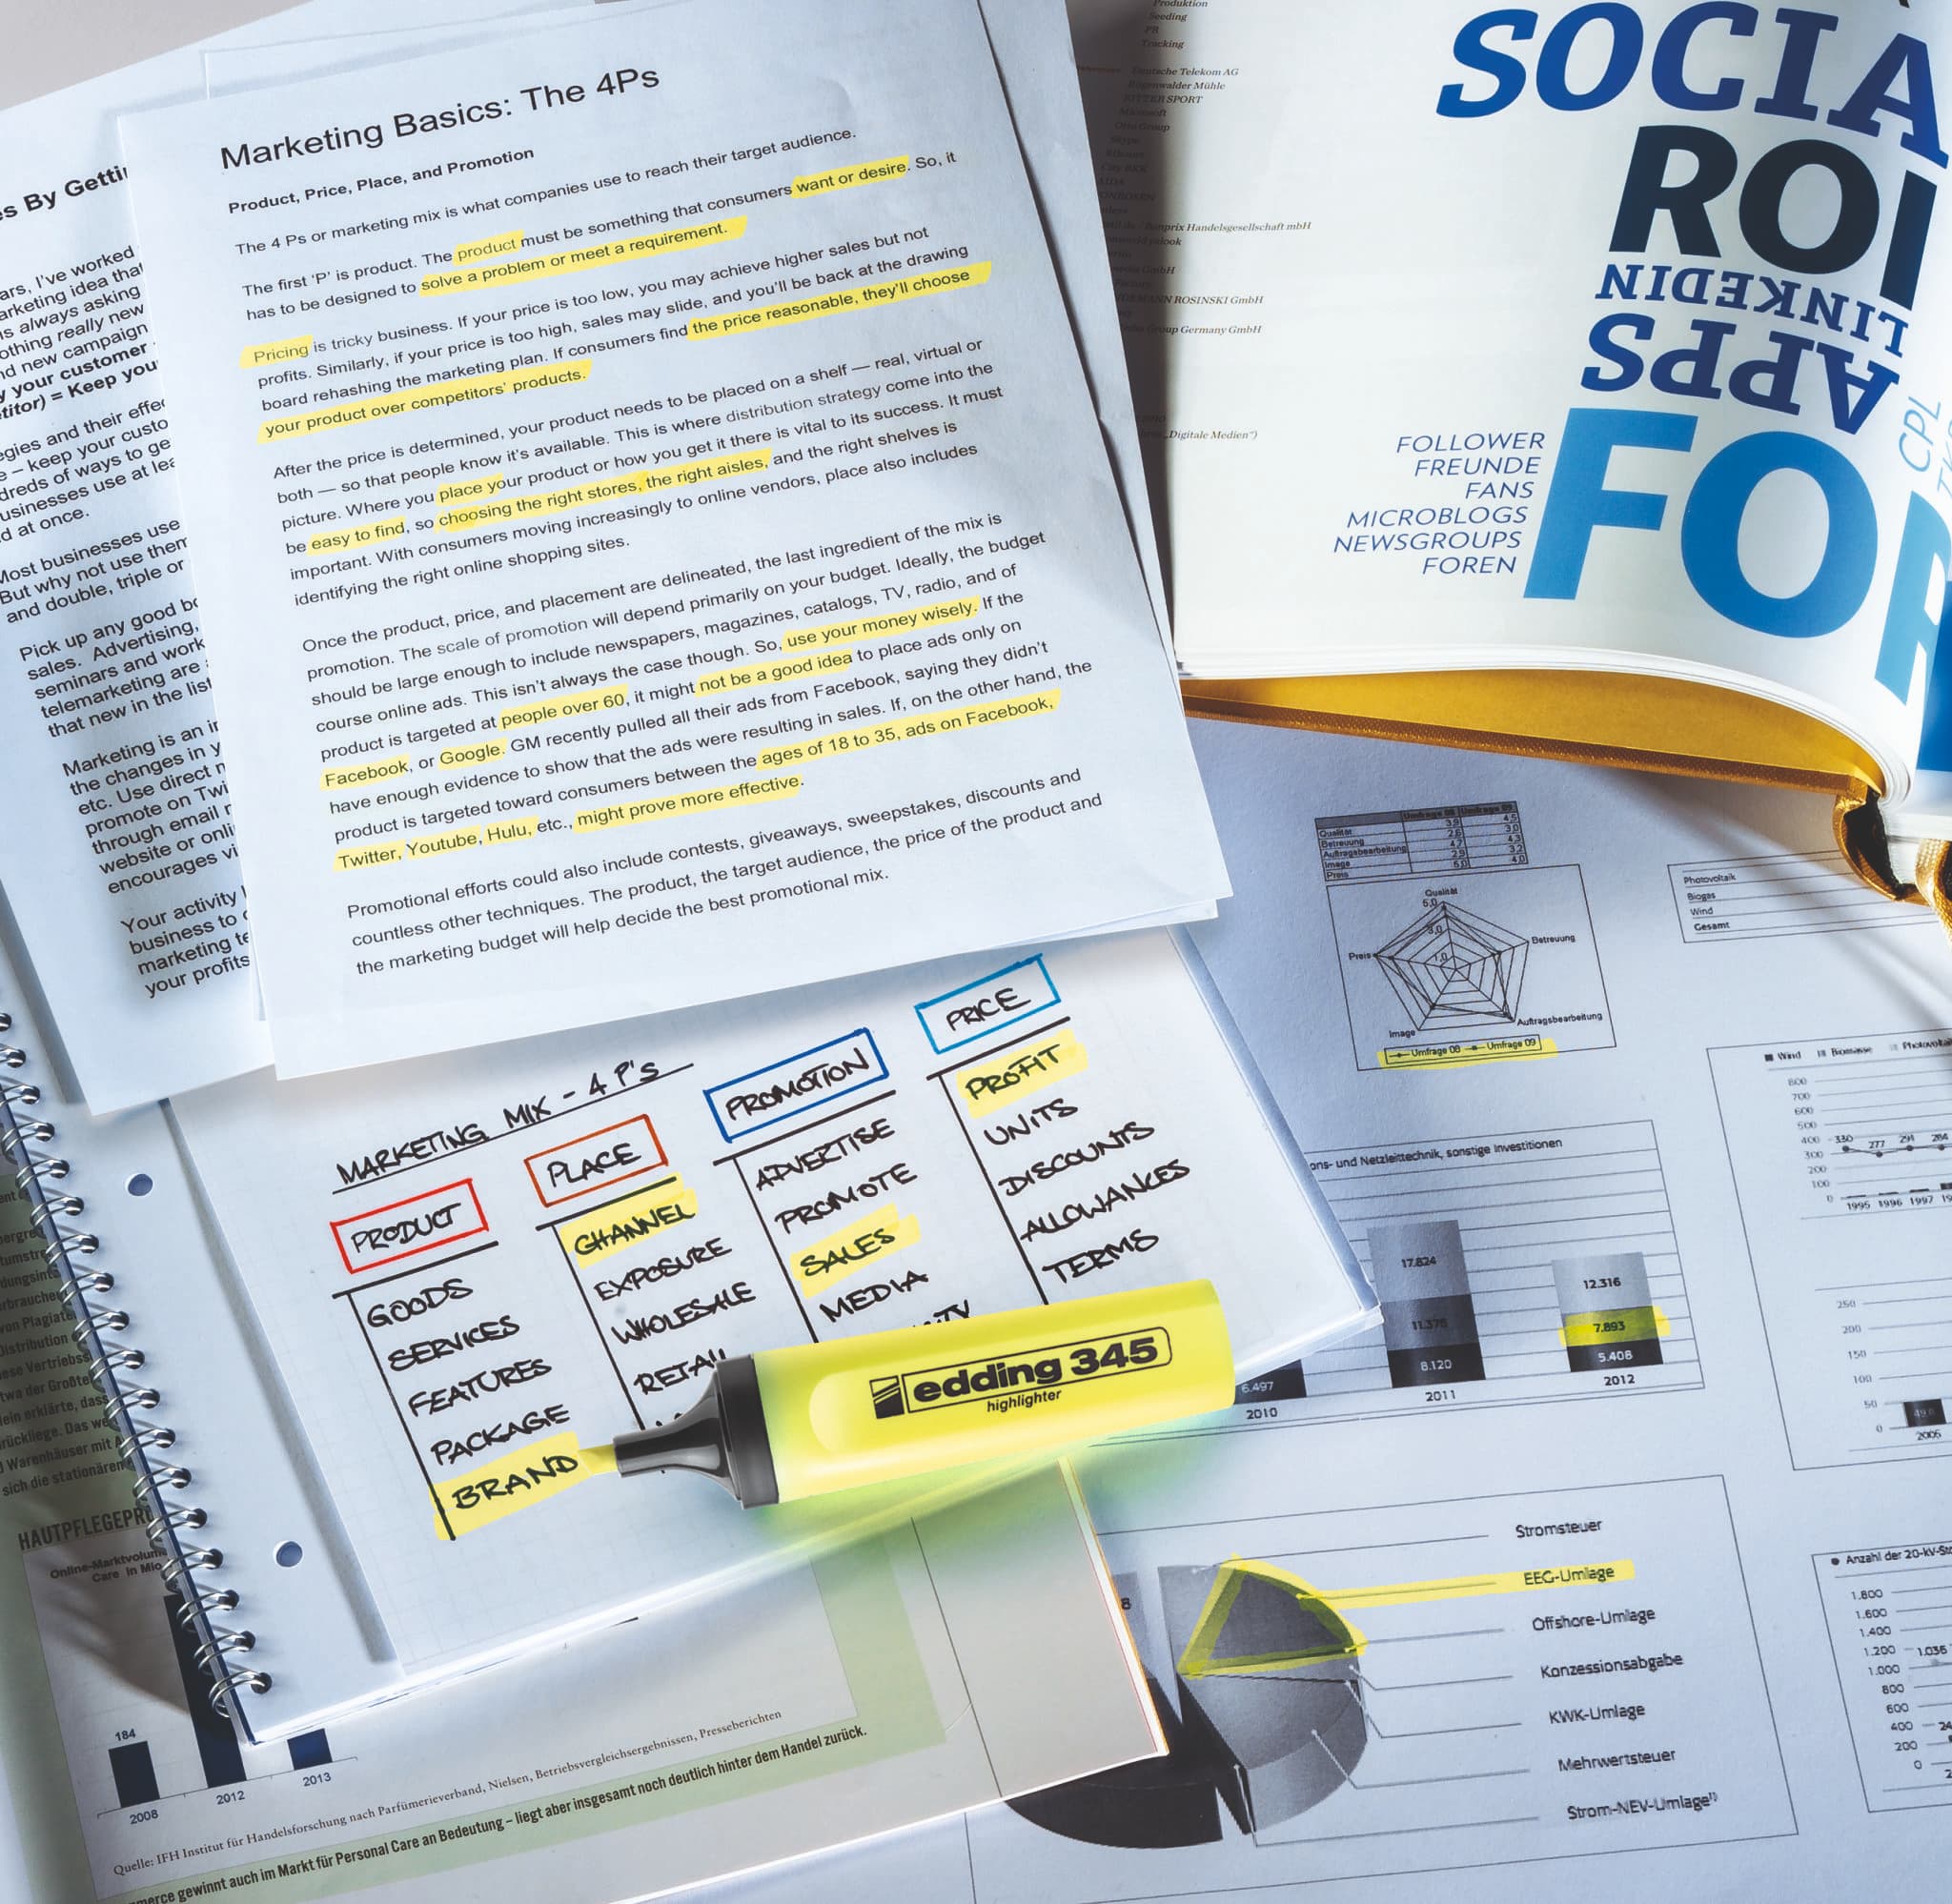 Eine Reihe von Marketing-Lernmaterialien, darunter hervorgehobene Texte mit einem edding 345 Textmarker 4er-Set und Notizen zu den 4ps des Marketings, ausgebreitet auf einem Tisch, repräsentativ für einen Studenten oder Profi.